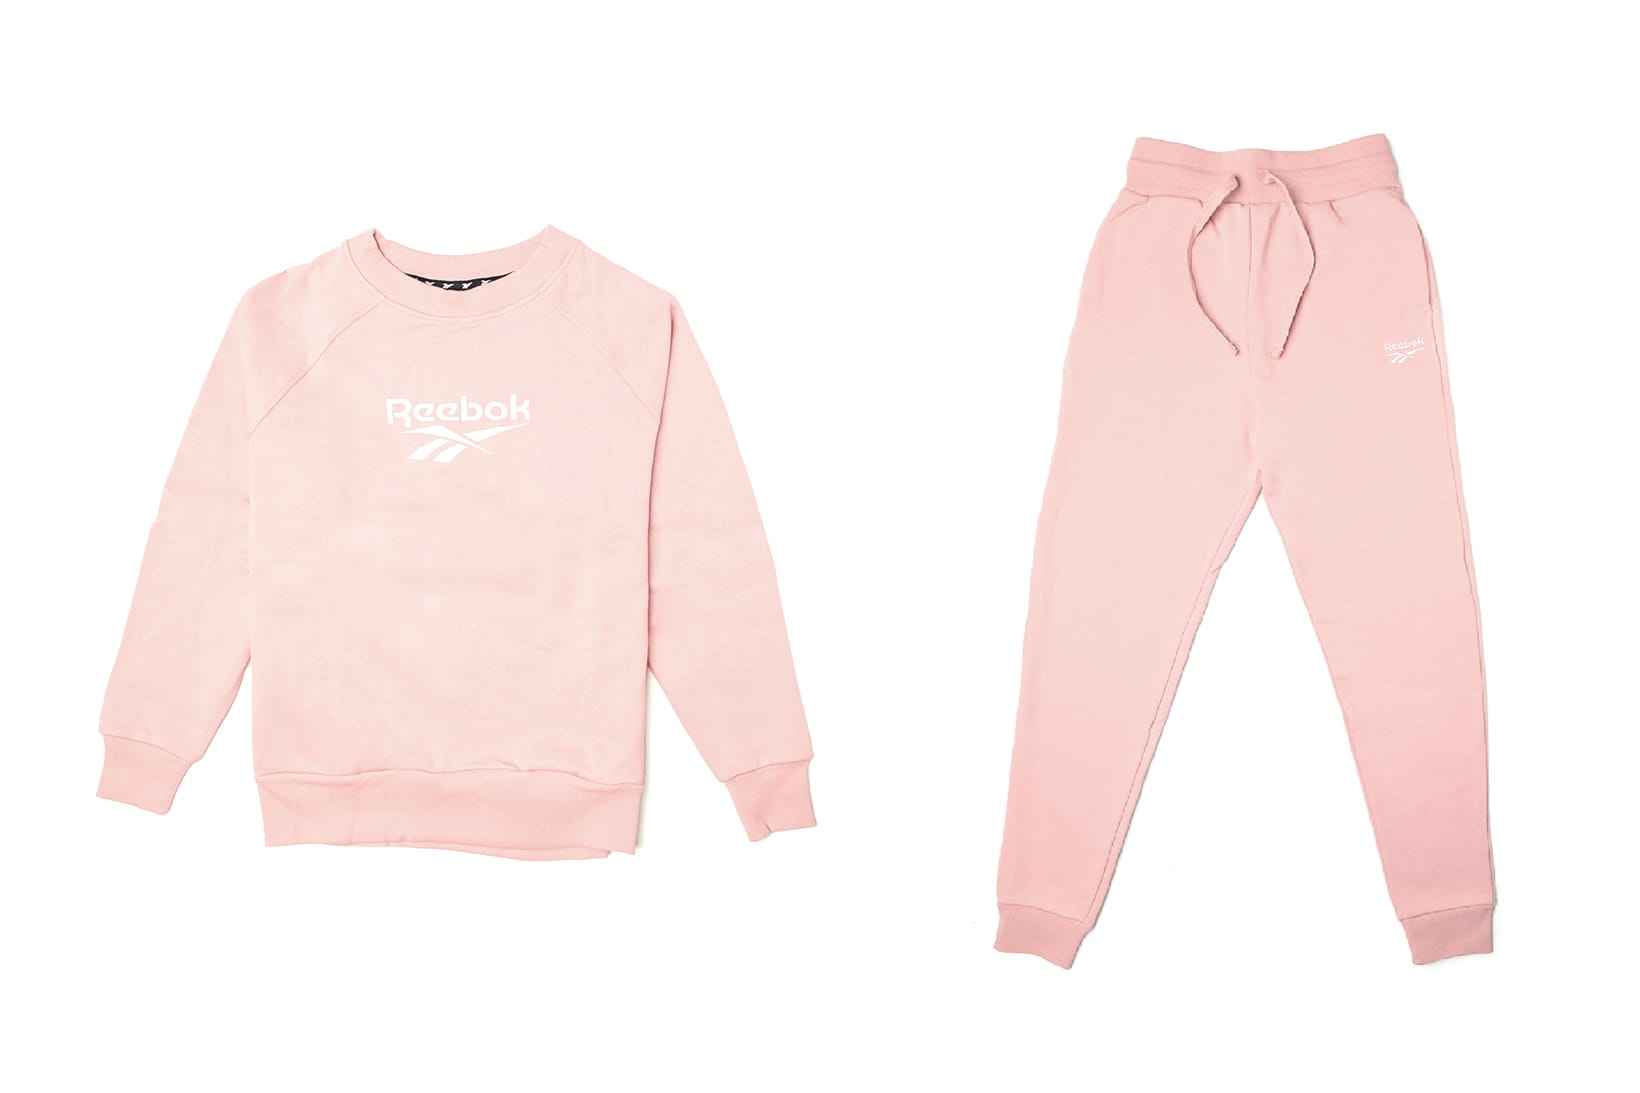 pink reebok sweater